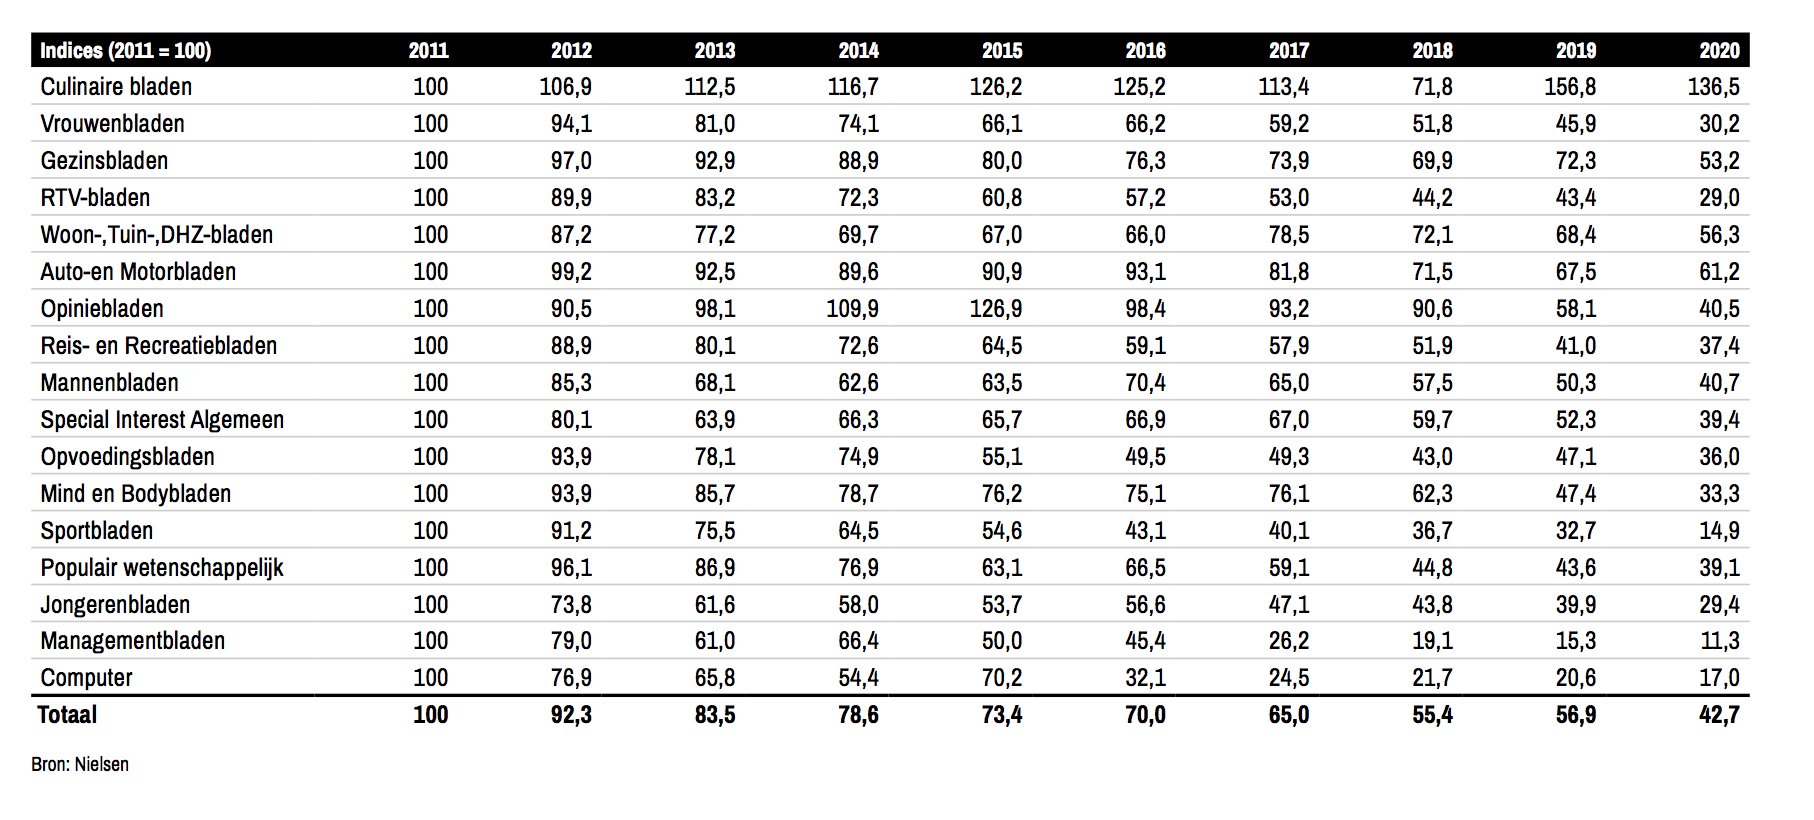 Bij verschillende tijdschriftcategorieën zie je advertentie-inkomsten dalen 2011-2020